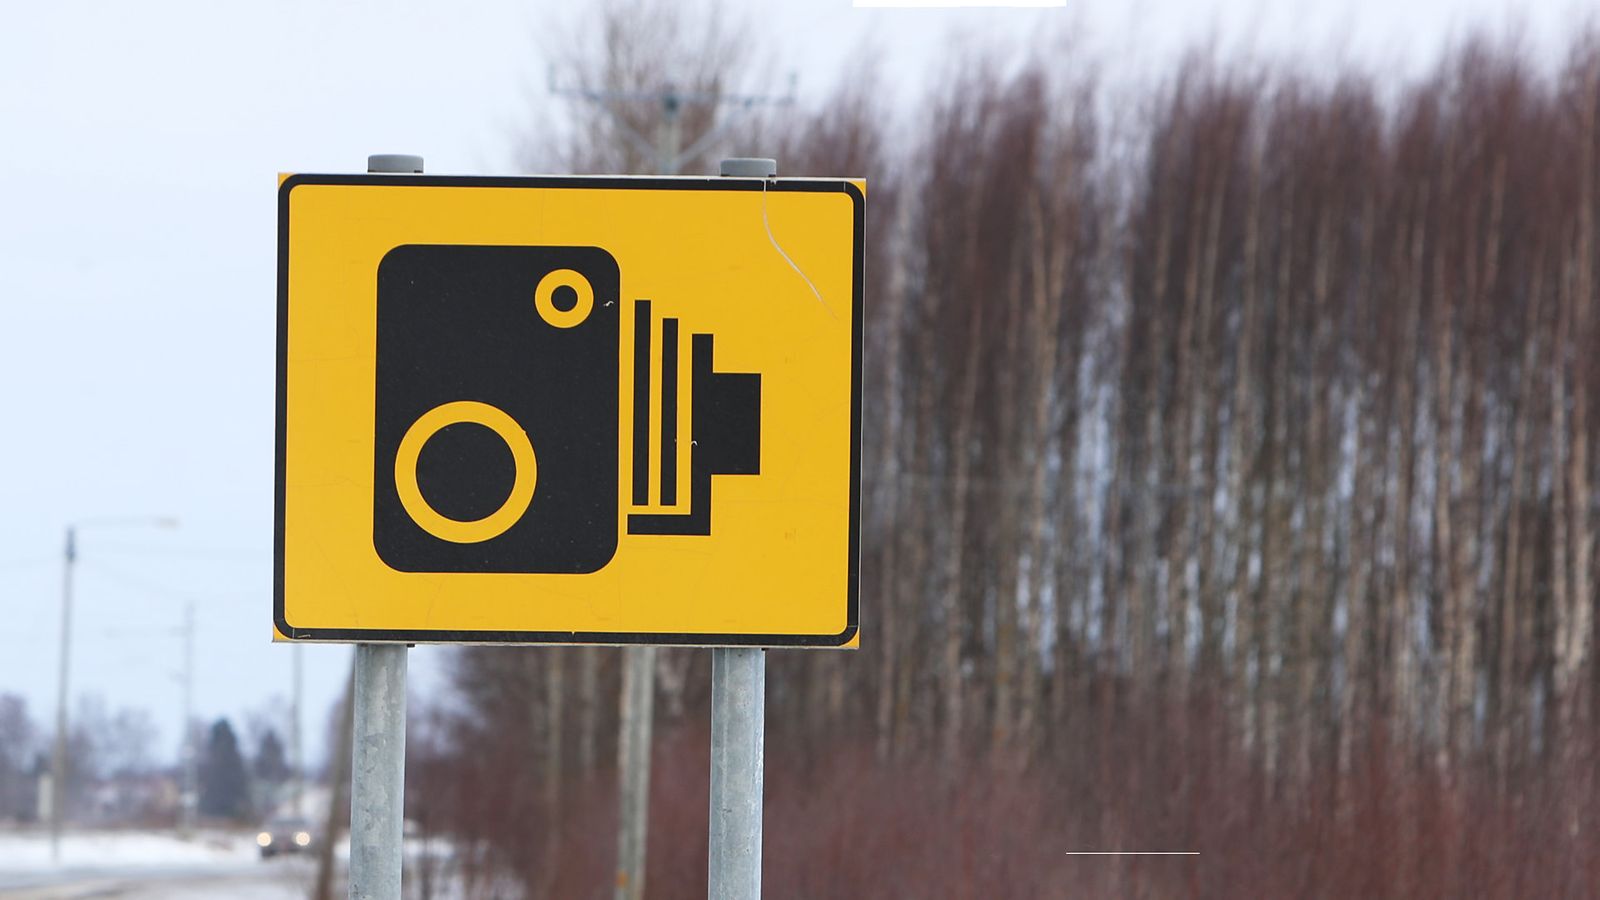 Millainen kamera on peltipoliisista varoittavassa liikennemerkissä? -  